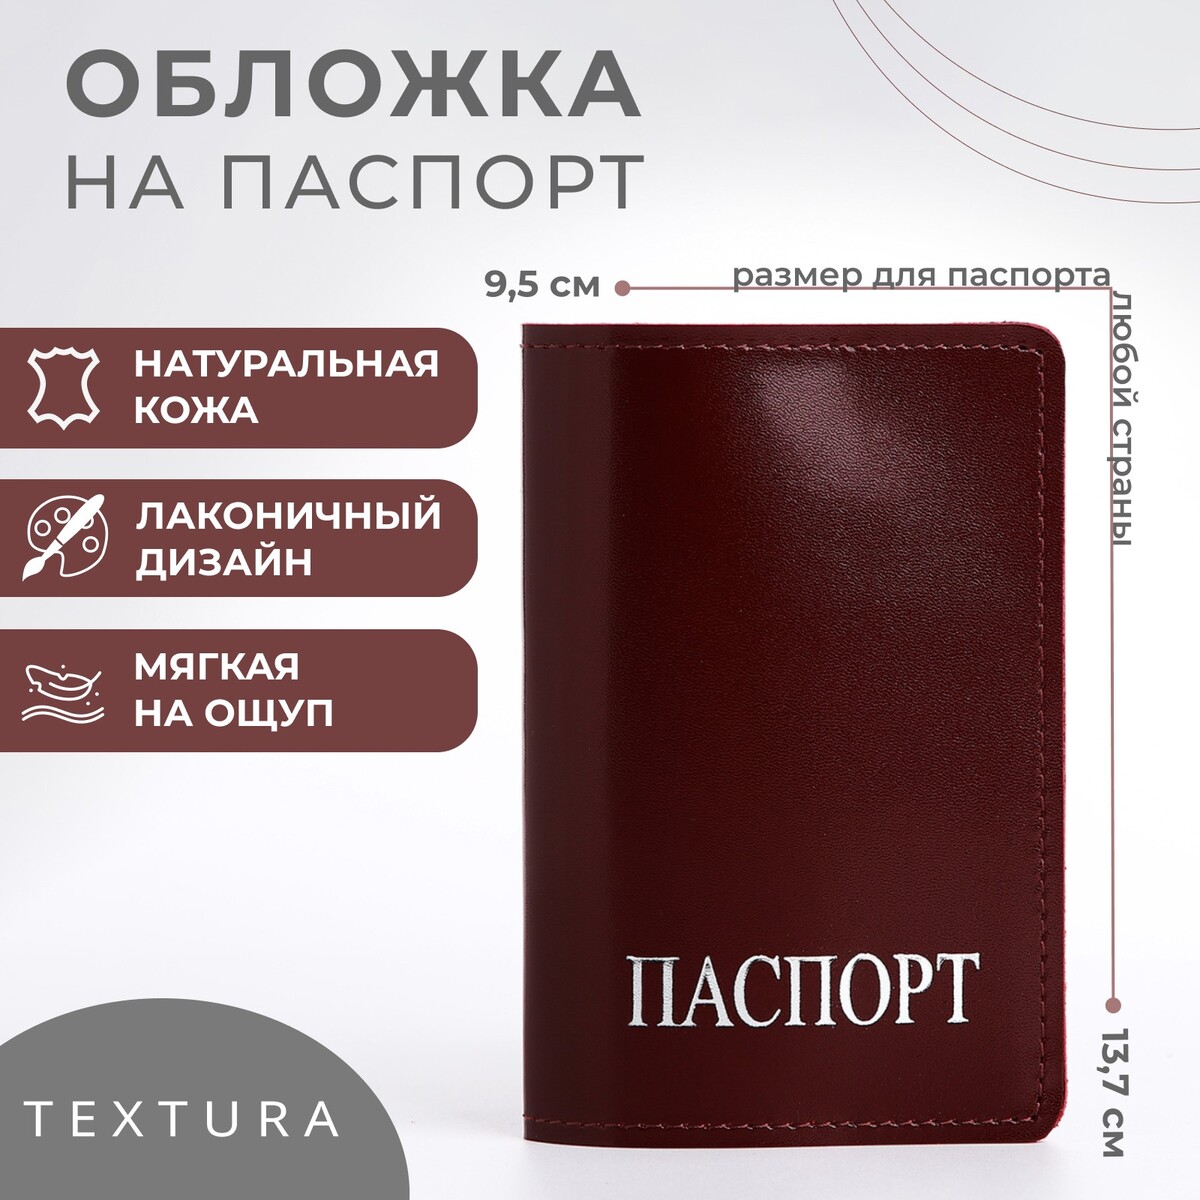 Обложка для паспорта textura, цвет бордовый обложка для паспорта textura голубой